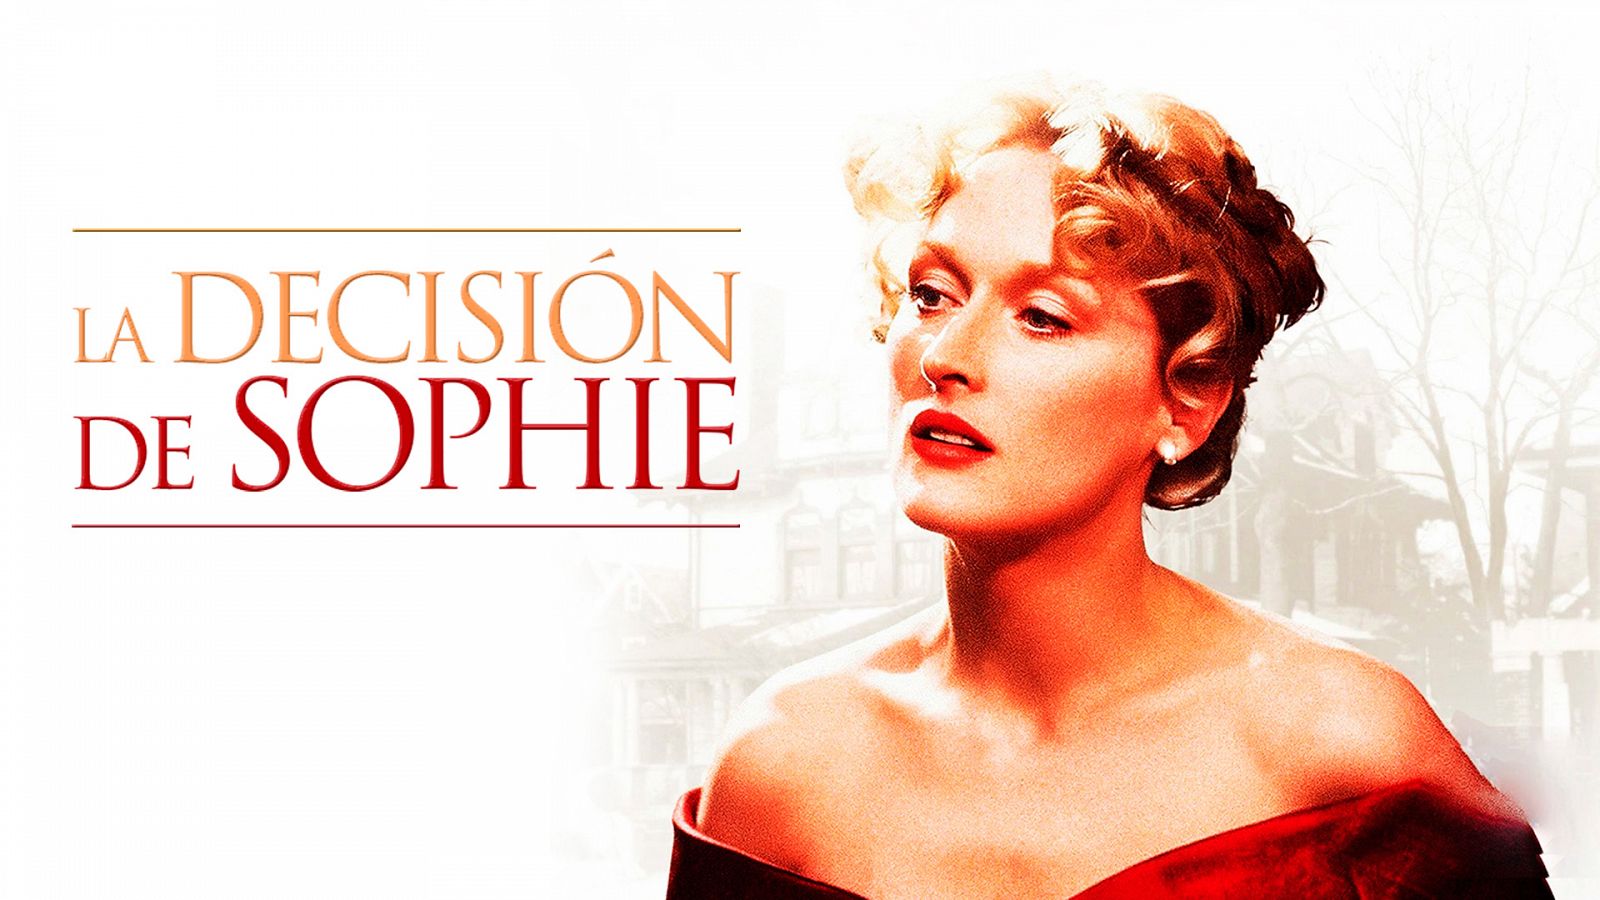 Días de cine clásico - La decisión de Sophie (presentación)